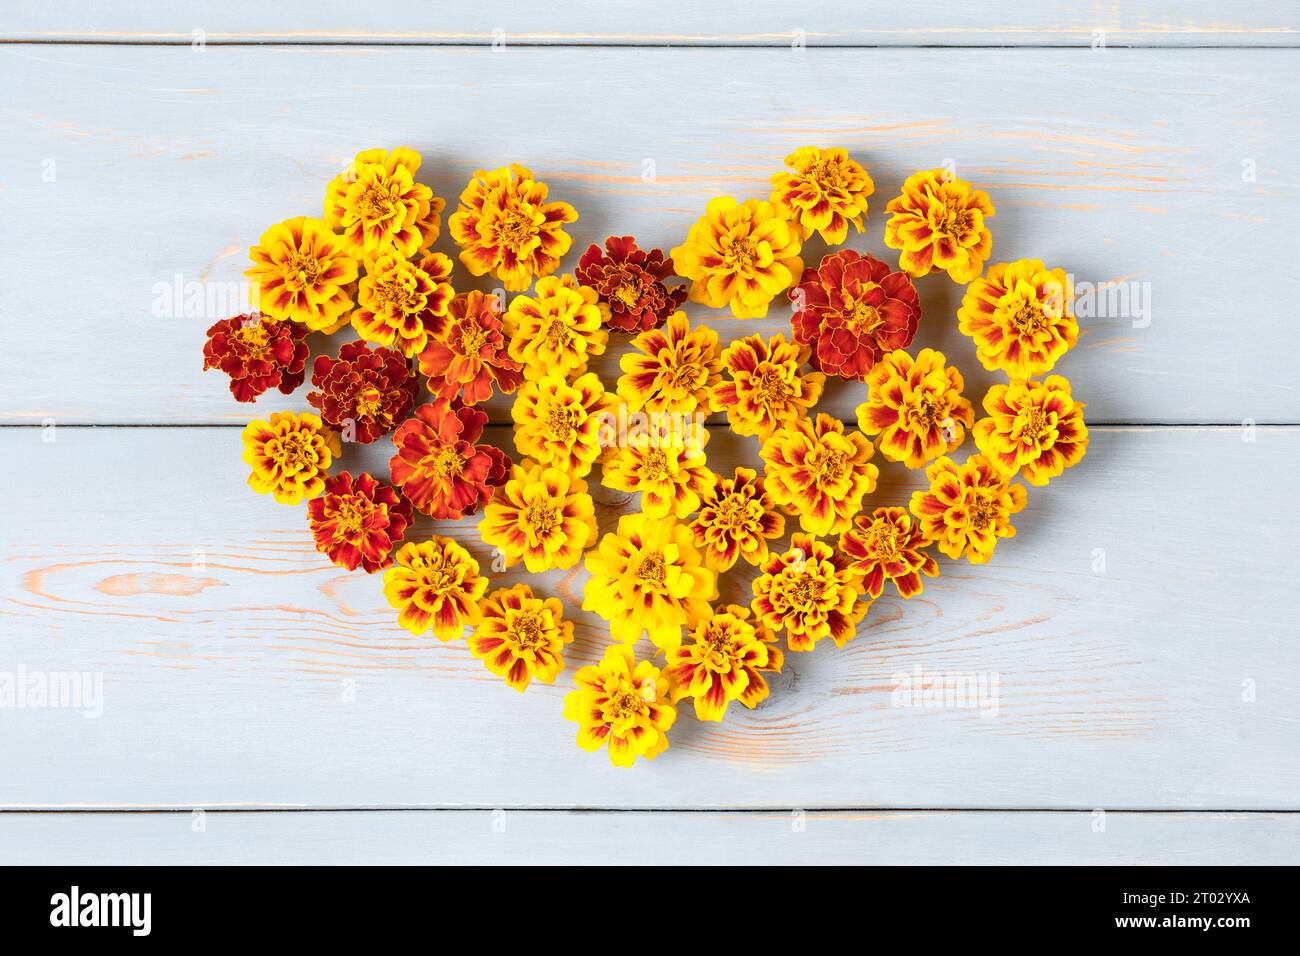 Happy Herbstkonzept. Ringelblumen in Form eines orangen Herzens auf blauem Holztisch. Herbstkomposition, Postkarte, flach liegend, Draufsicht Stockfoto